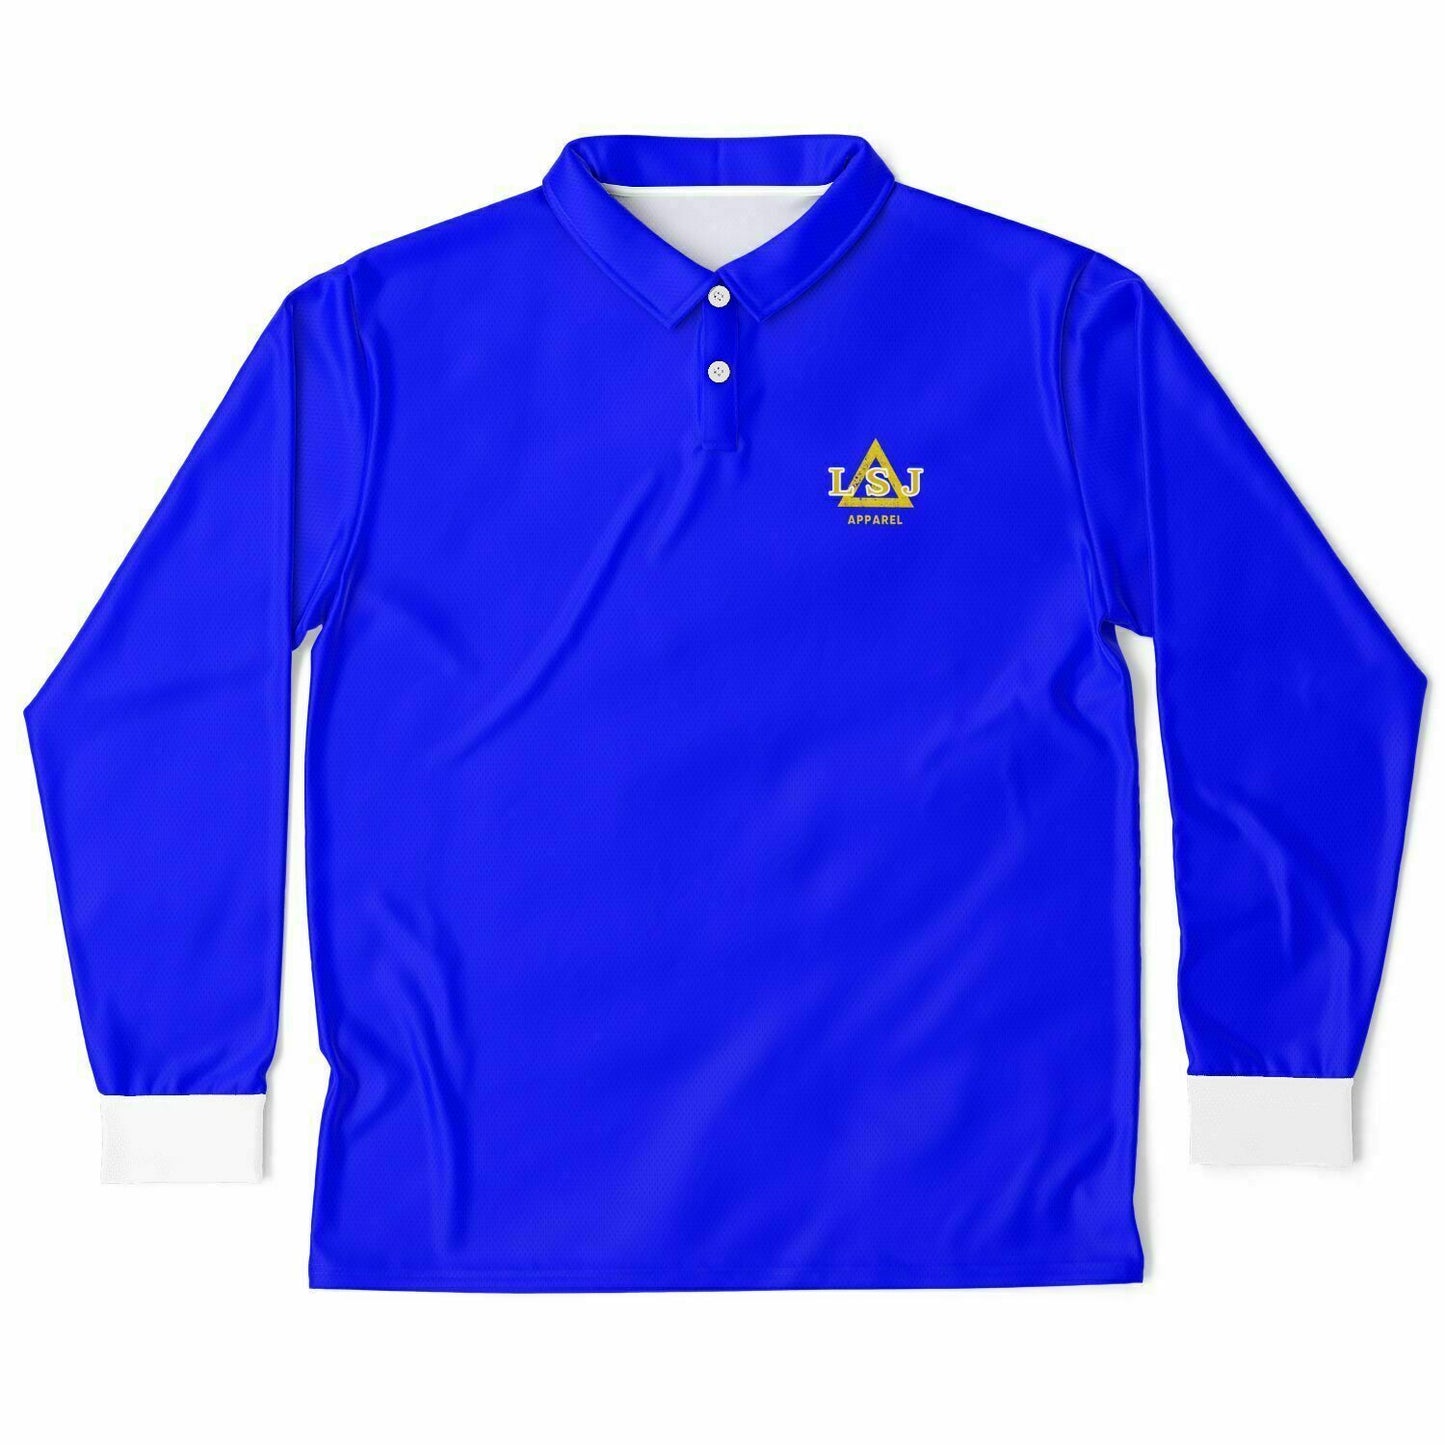 LSJ Royal Blue Long Sleeve Polo